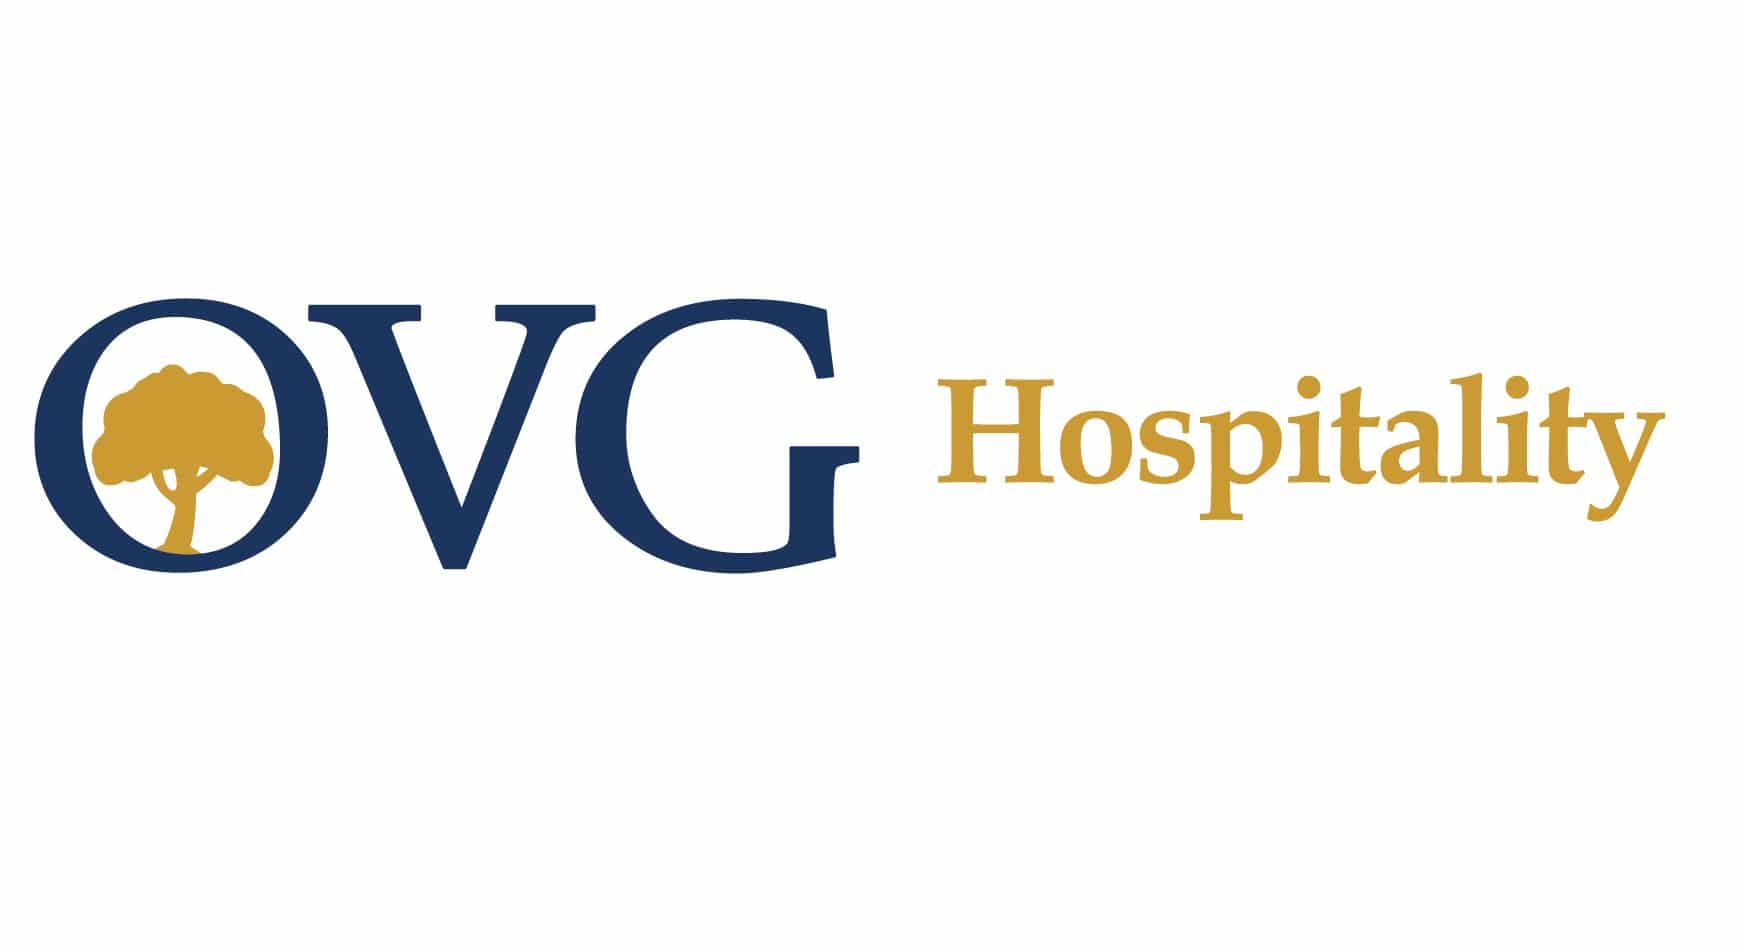 OVG_Hospitality_Logo_FullColor-1.jpg